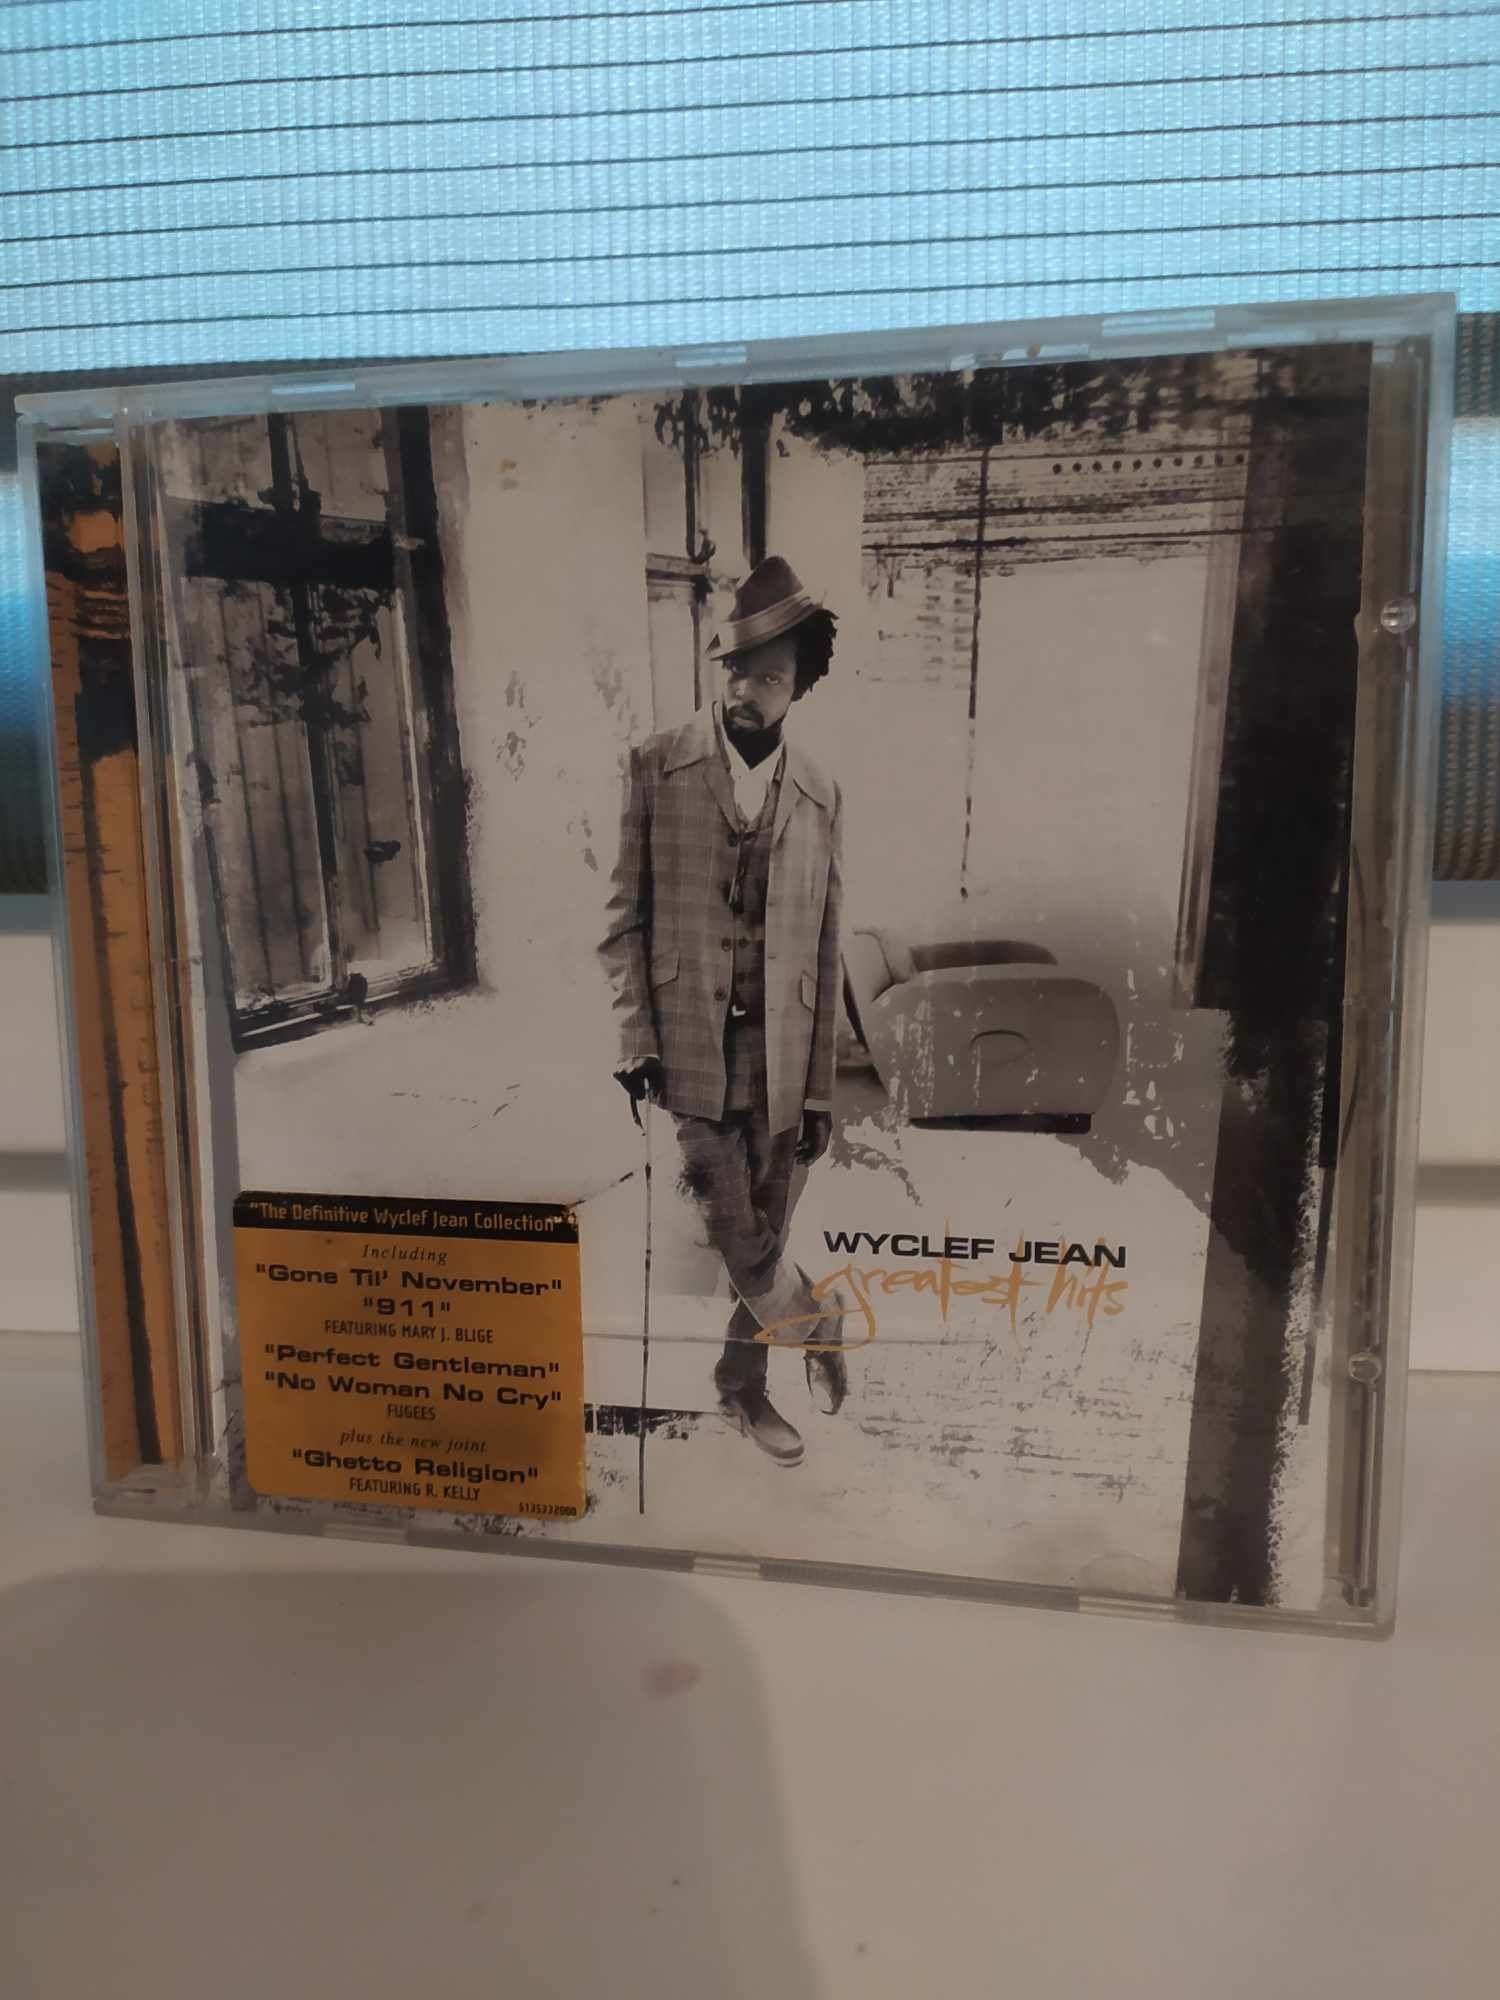 Płyta CD Wyclef Jean - Greatest Hits